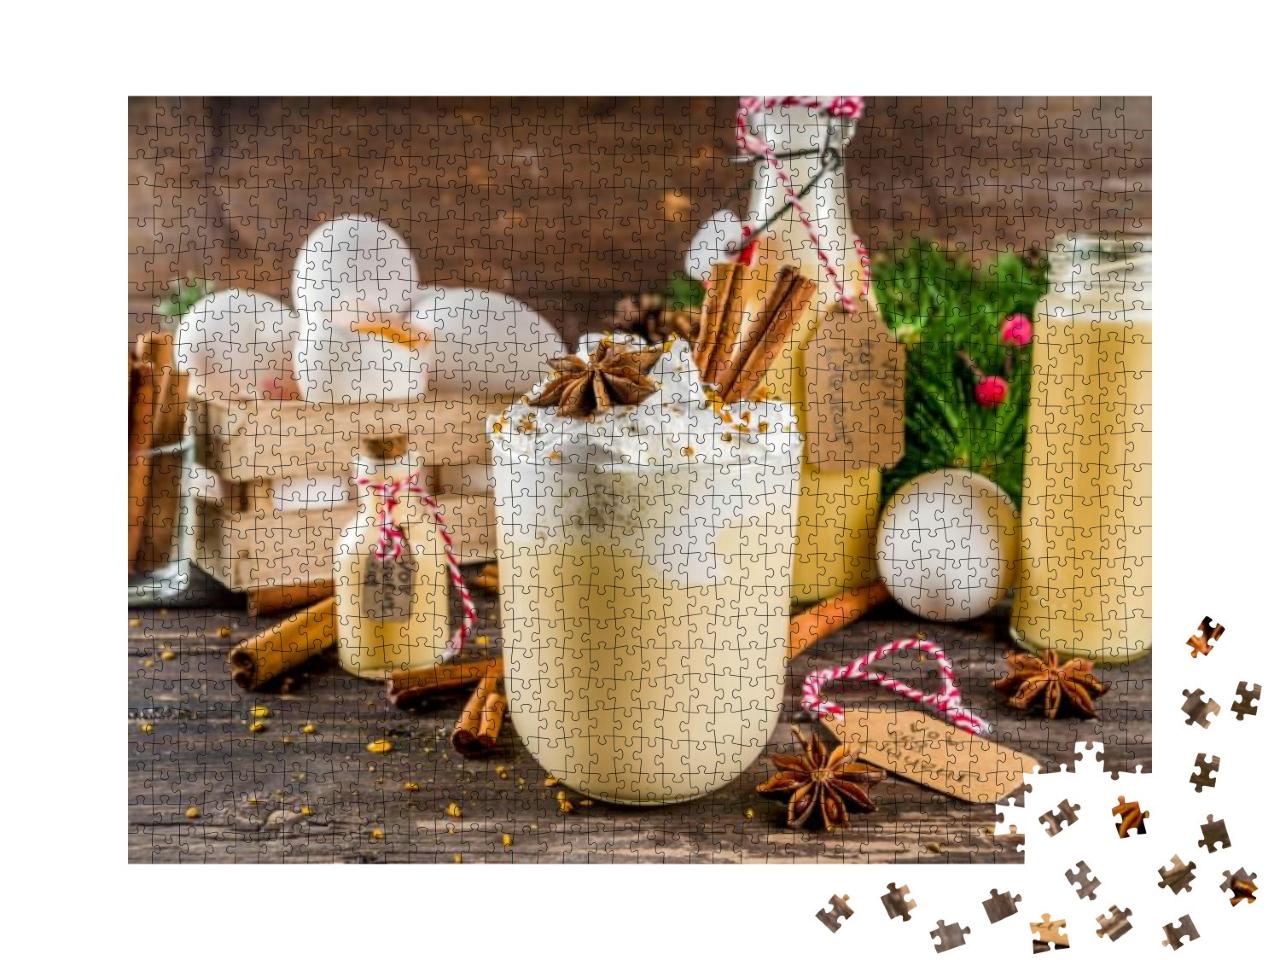 Puzzle 1000 Teile „Weihnachtscocktail Bombardino Livigno mit Eierlikör und Rum“